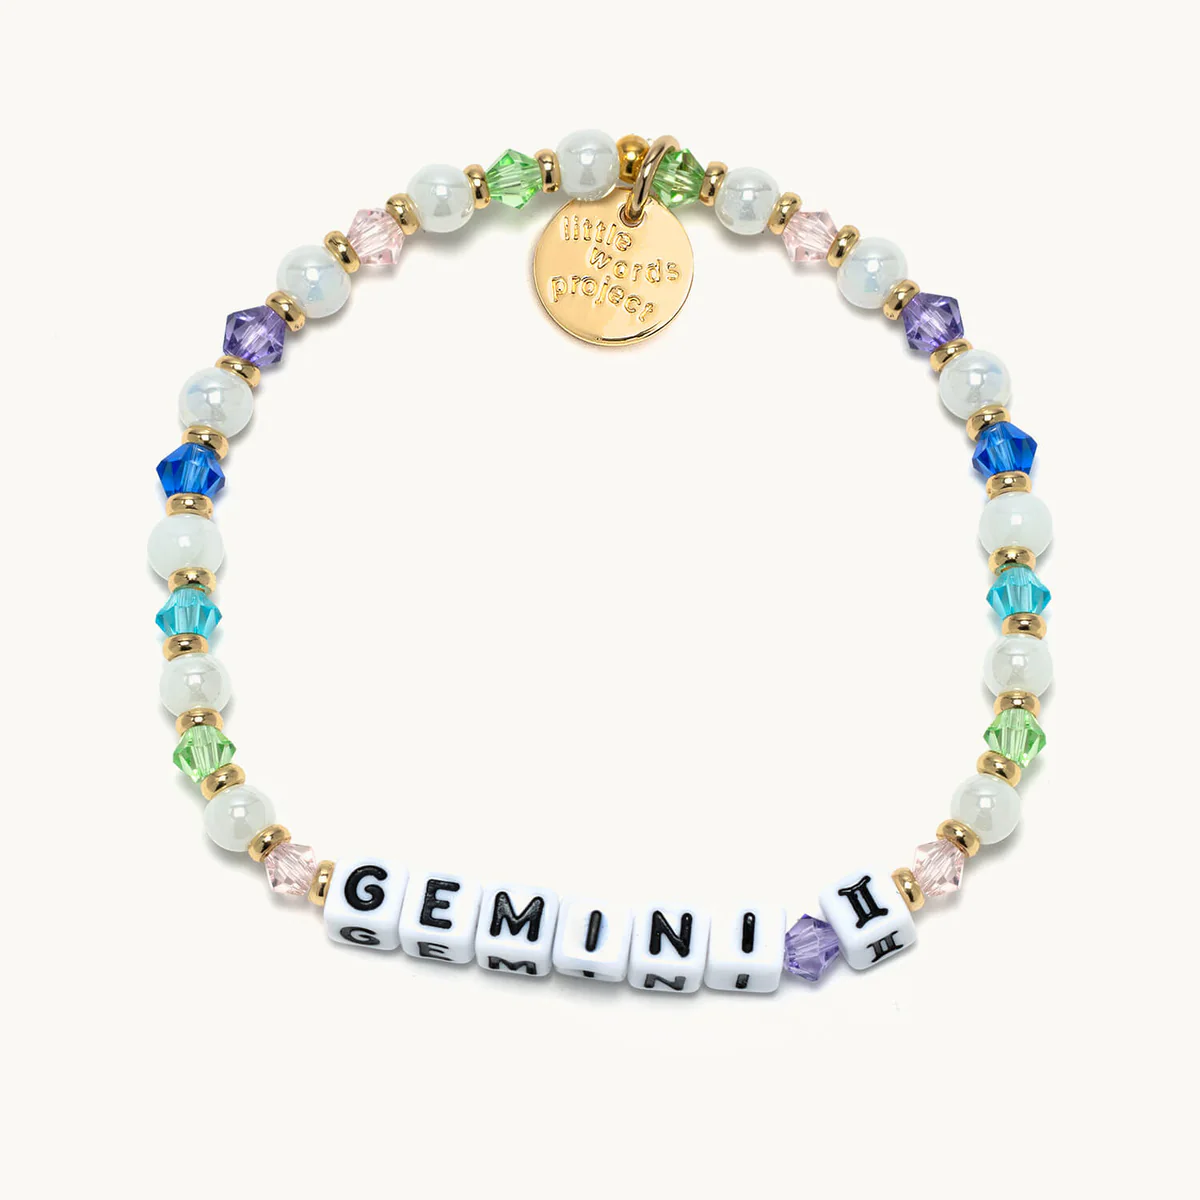 Little Words Project Gemini Bracelet